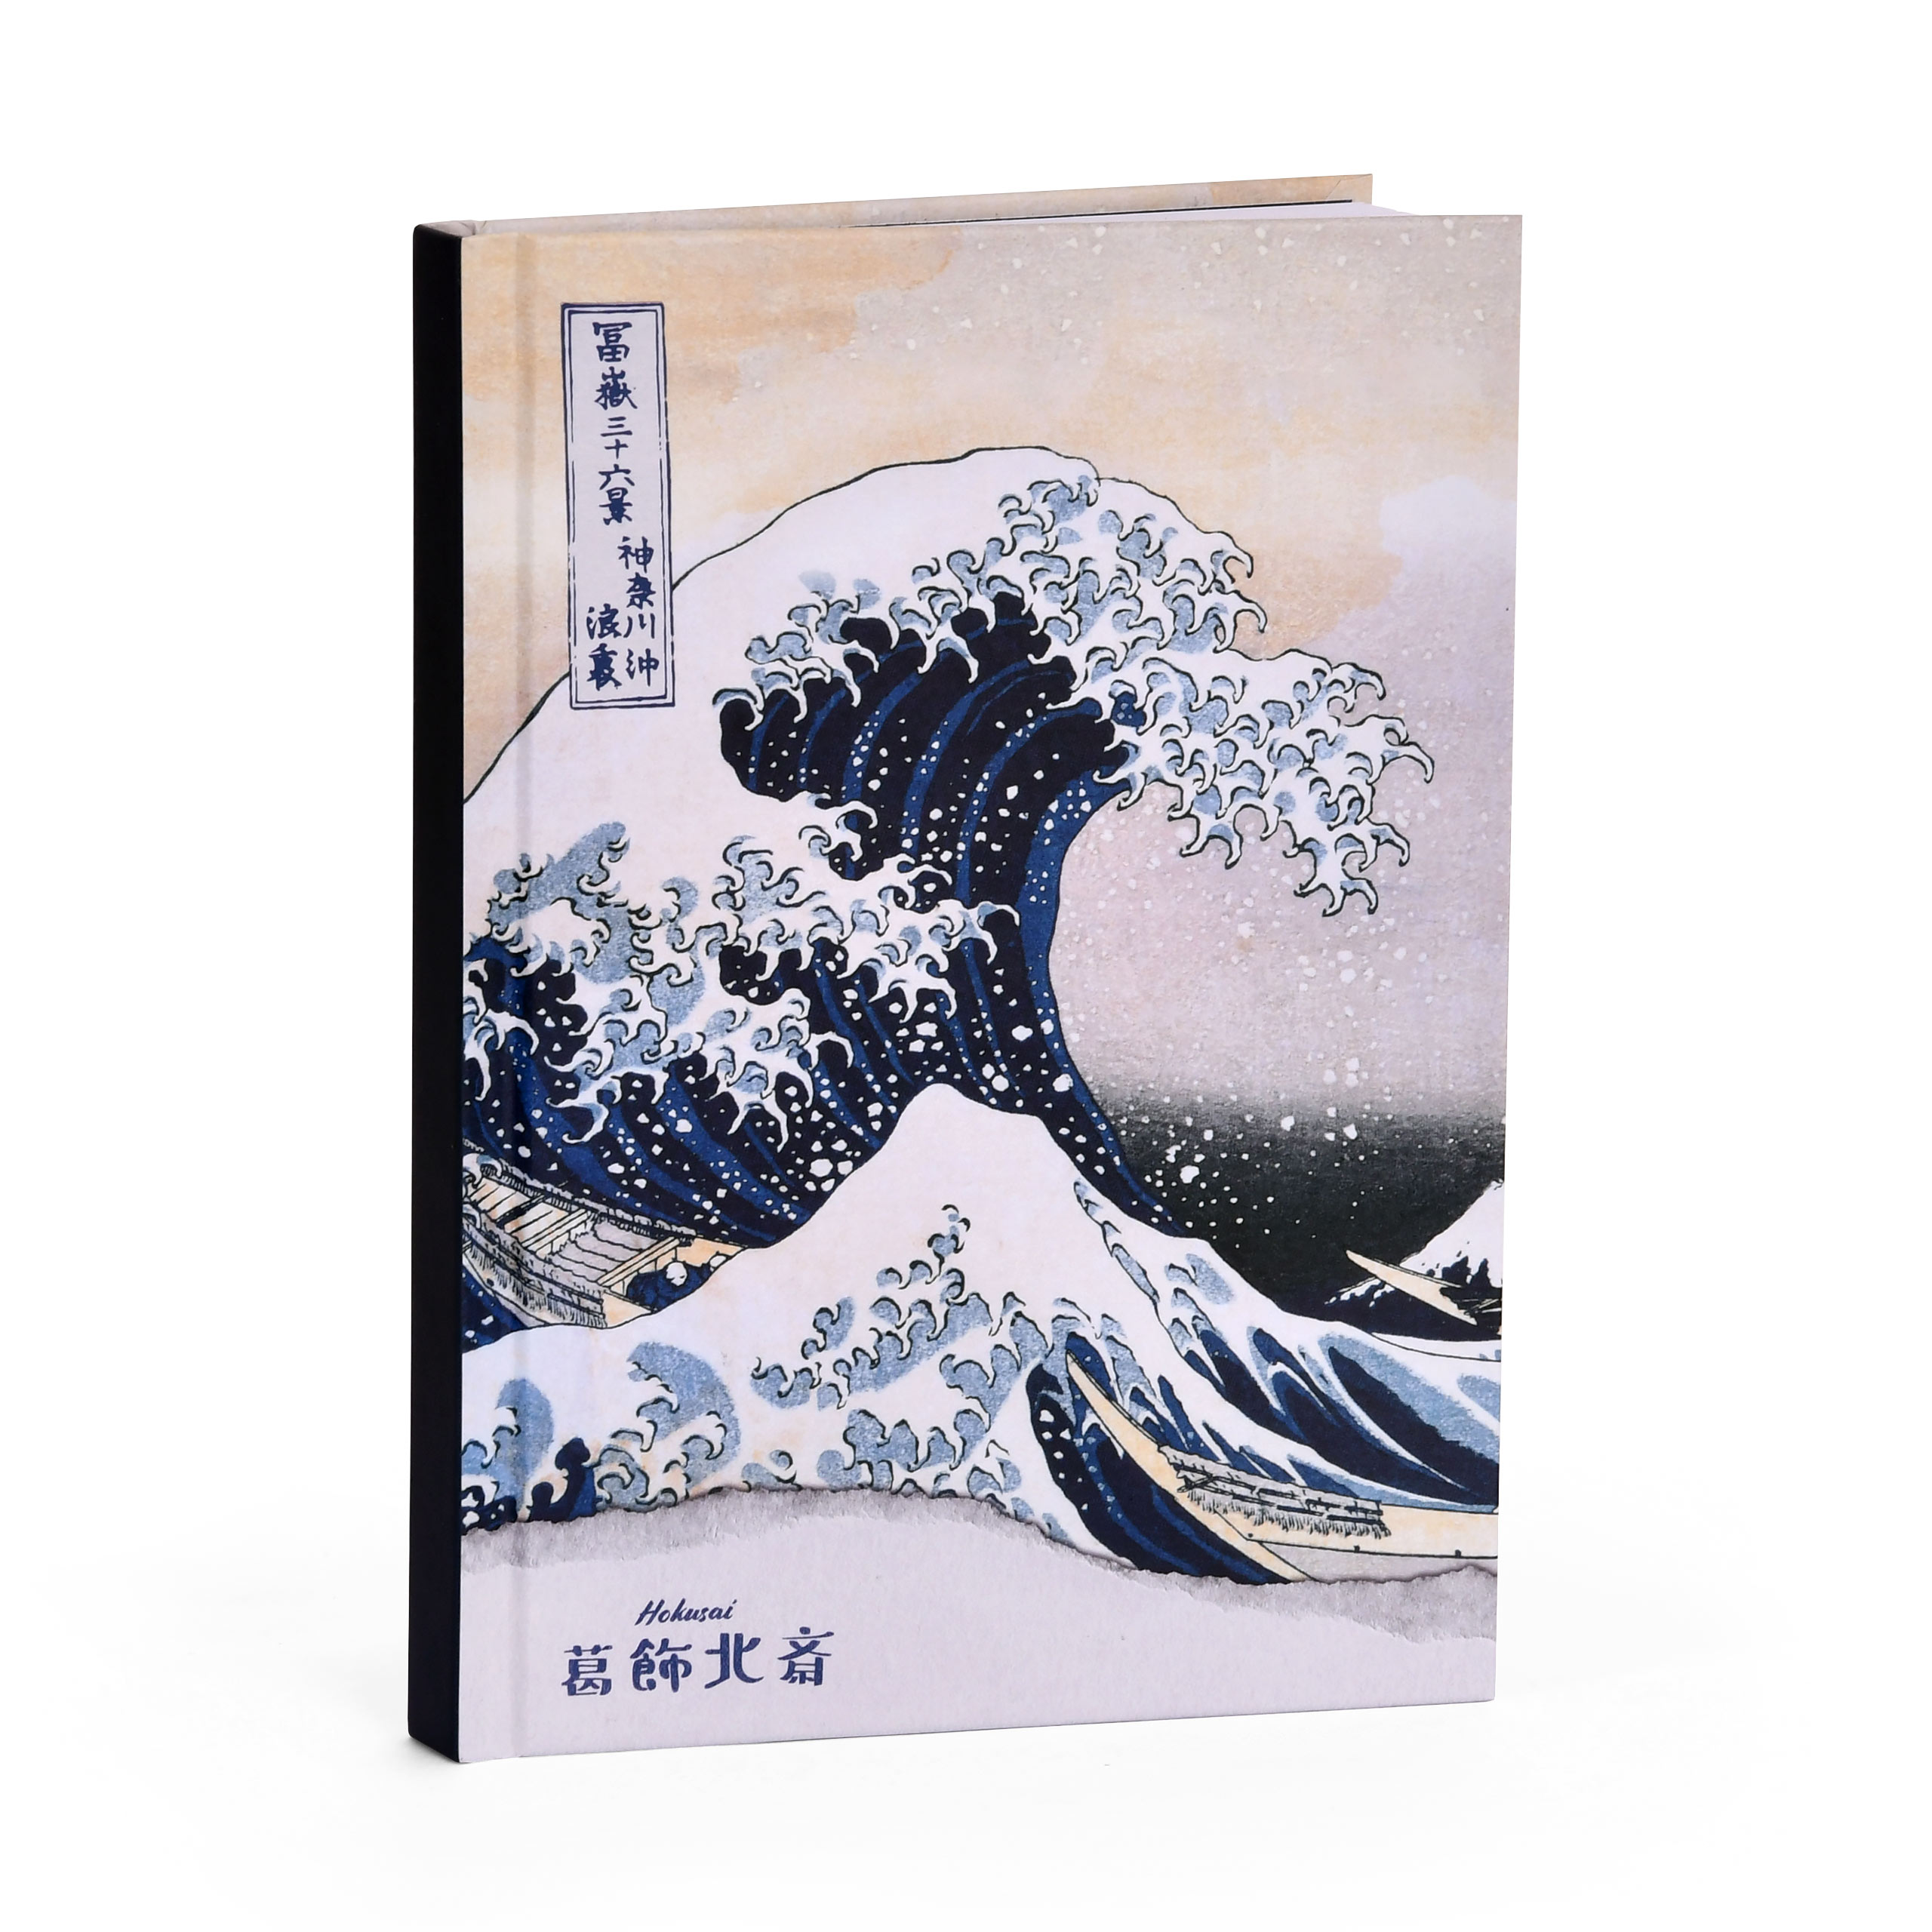 Hokusai The Great Wave off Kanagawa - Notebook